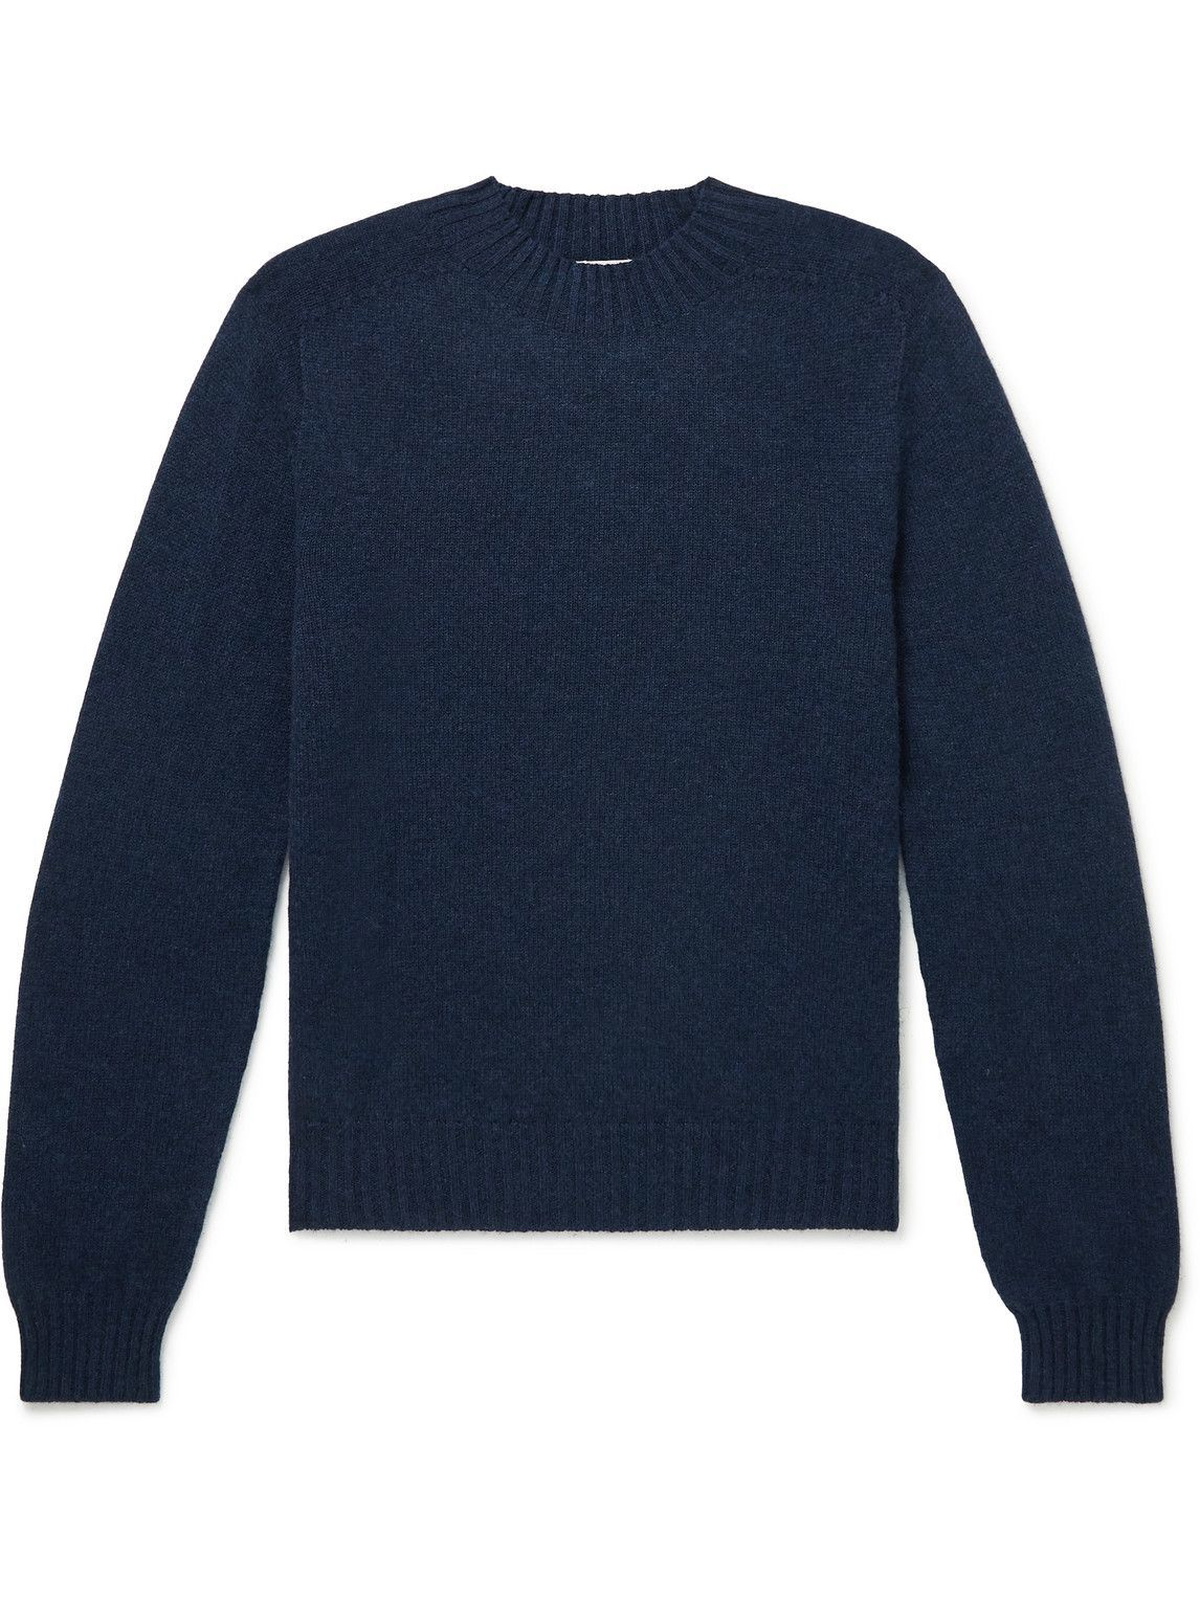 L.E.J - Cashmere Mock-Neck Sweater - Blue L.E.J